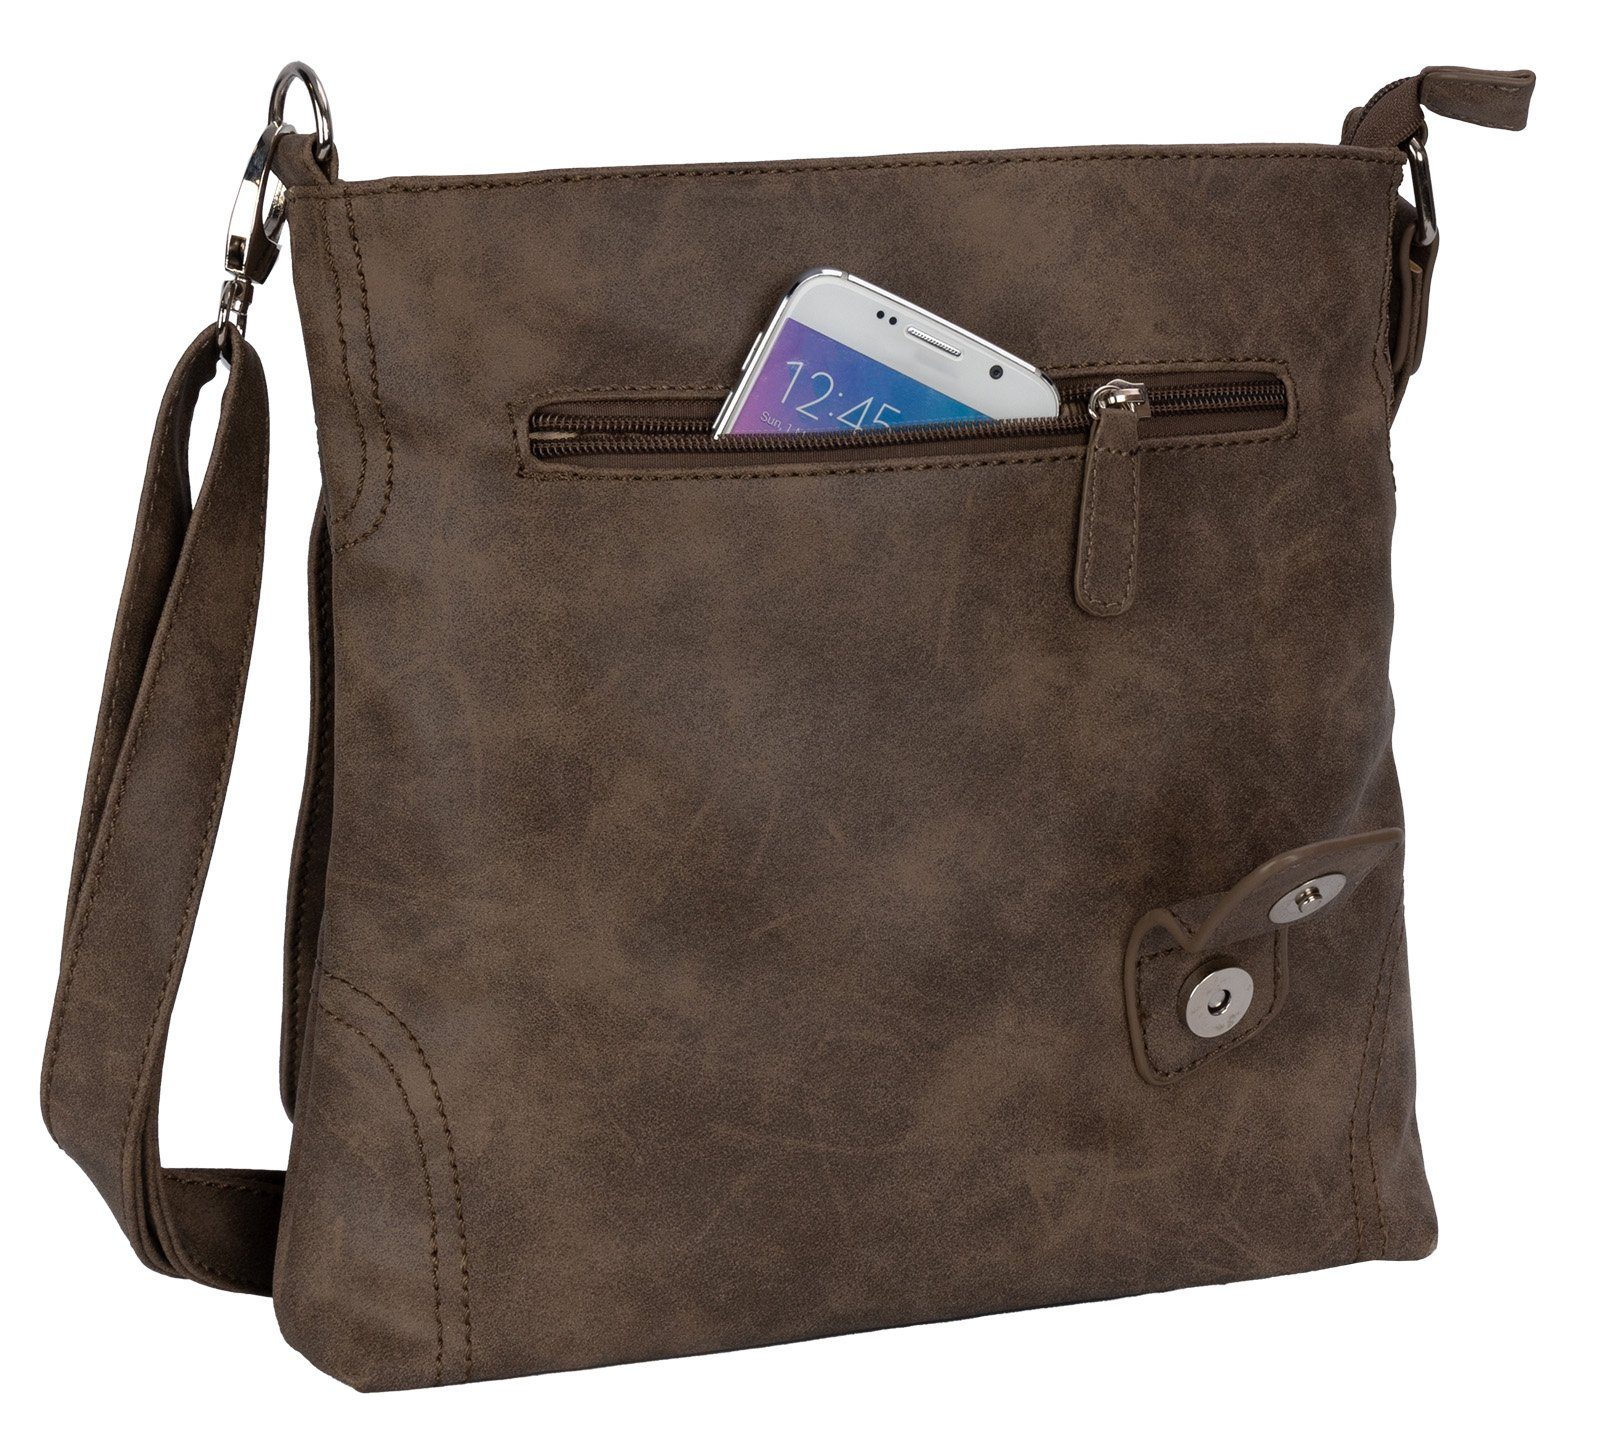 Handtasche BAG Umhängetasche Schlüsseltasche Umhängetasche als BRAUN Schultertasche, tragbar Schultertasche Bag Damentasche Street T0104, STREET